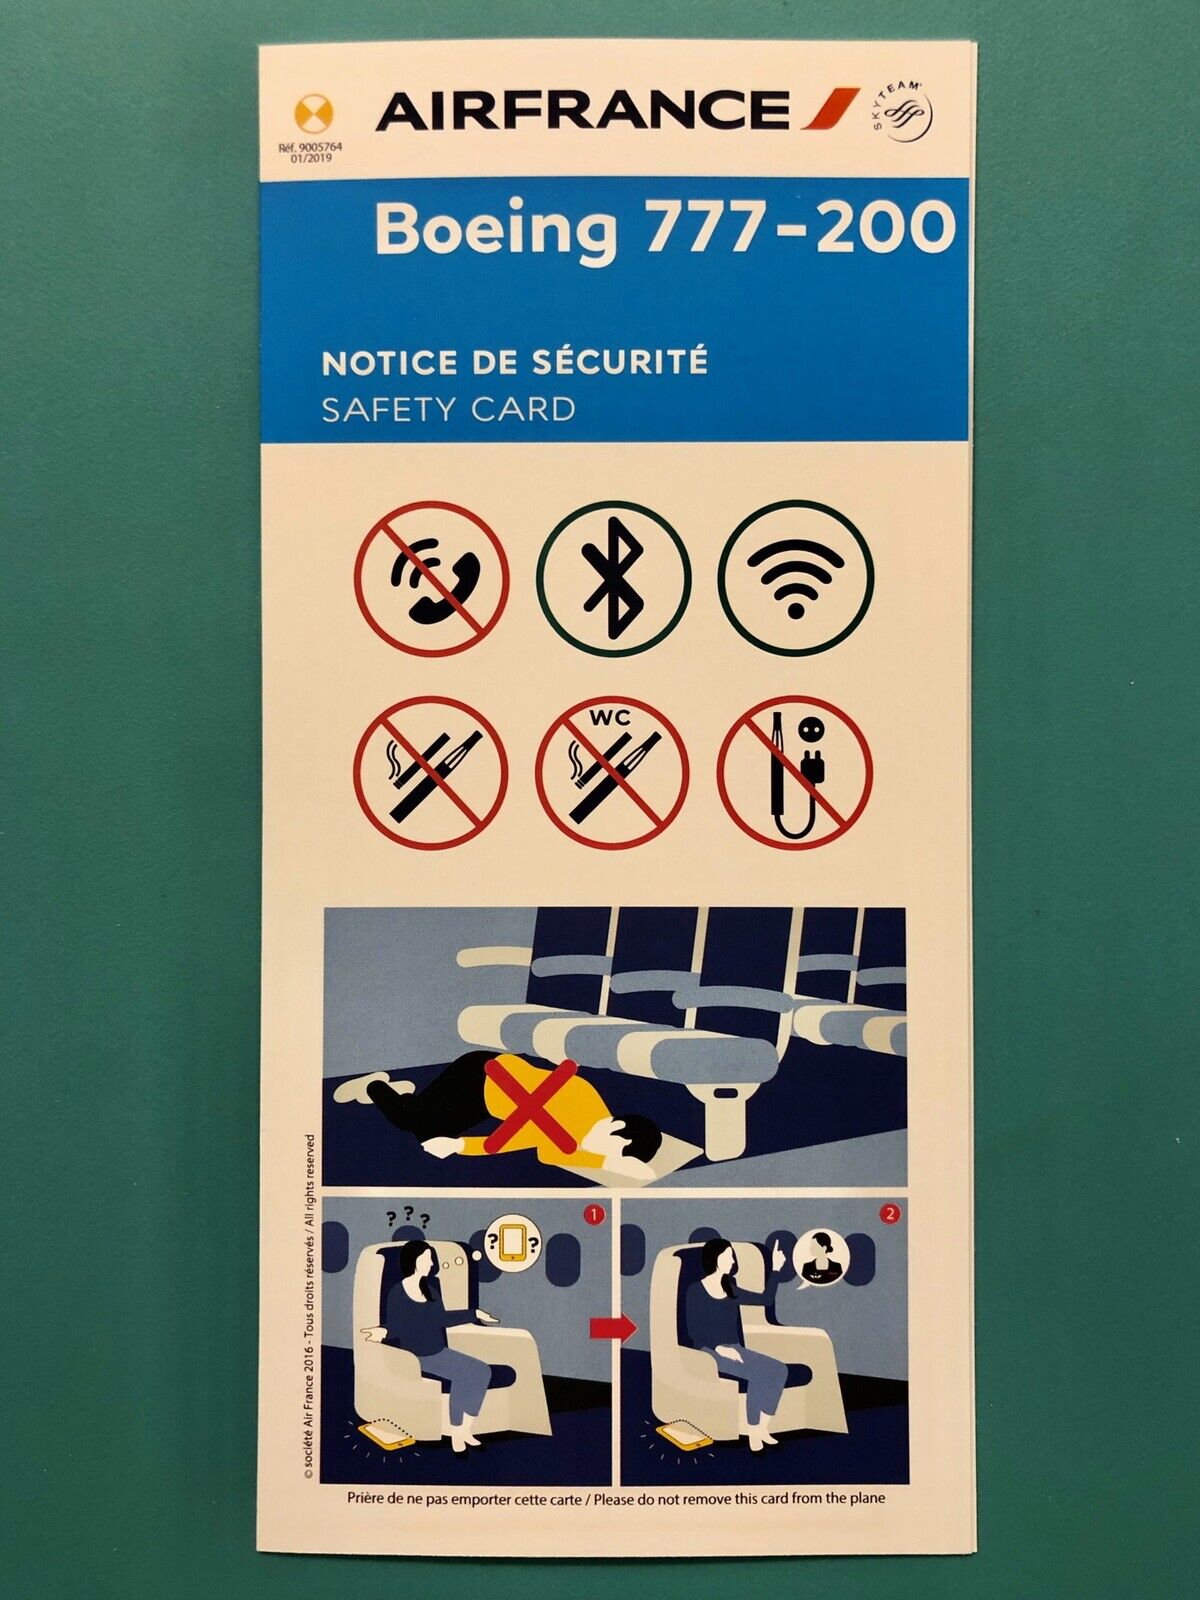 2019 AIR FRANCE SAFETY CARD —777-200